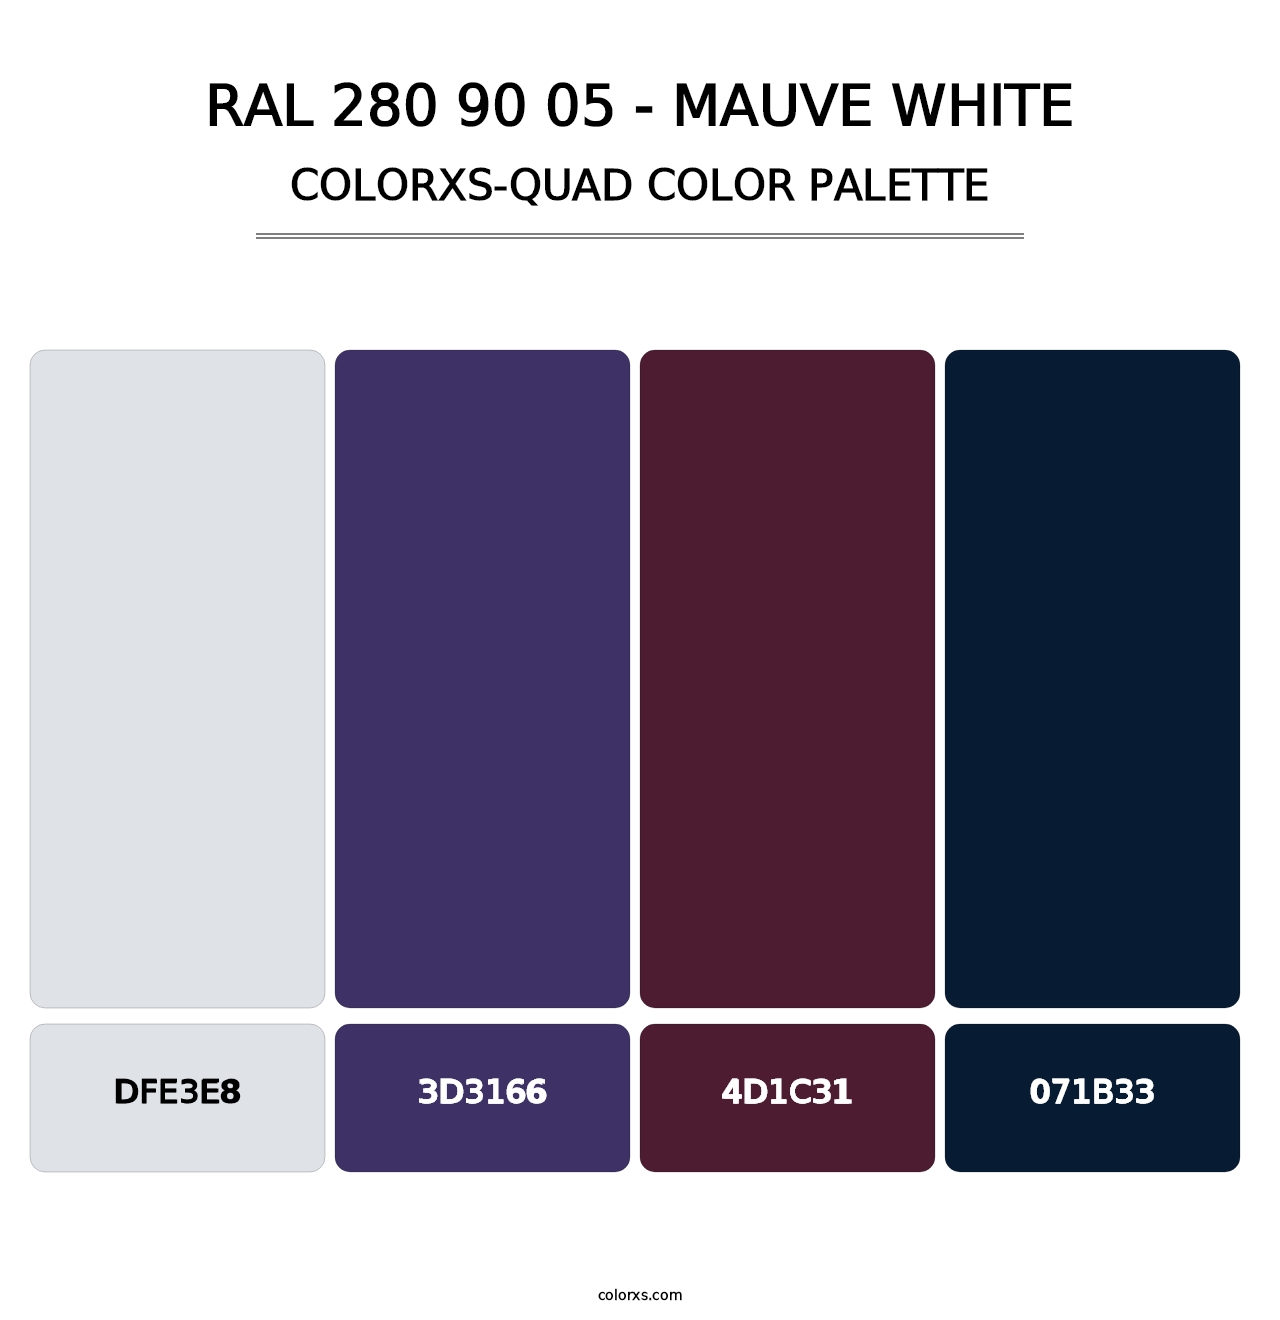 RAL 280 90 05 - Mauve White - Colorxs Quad Palette